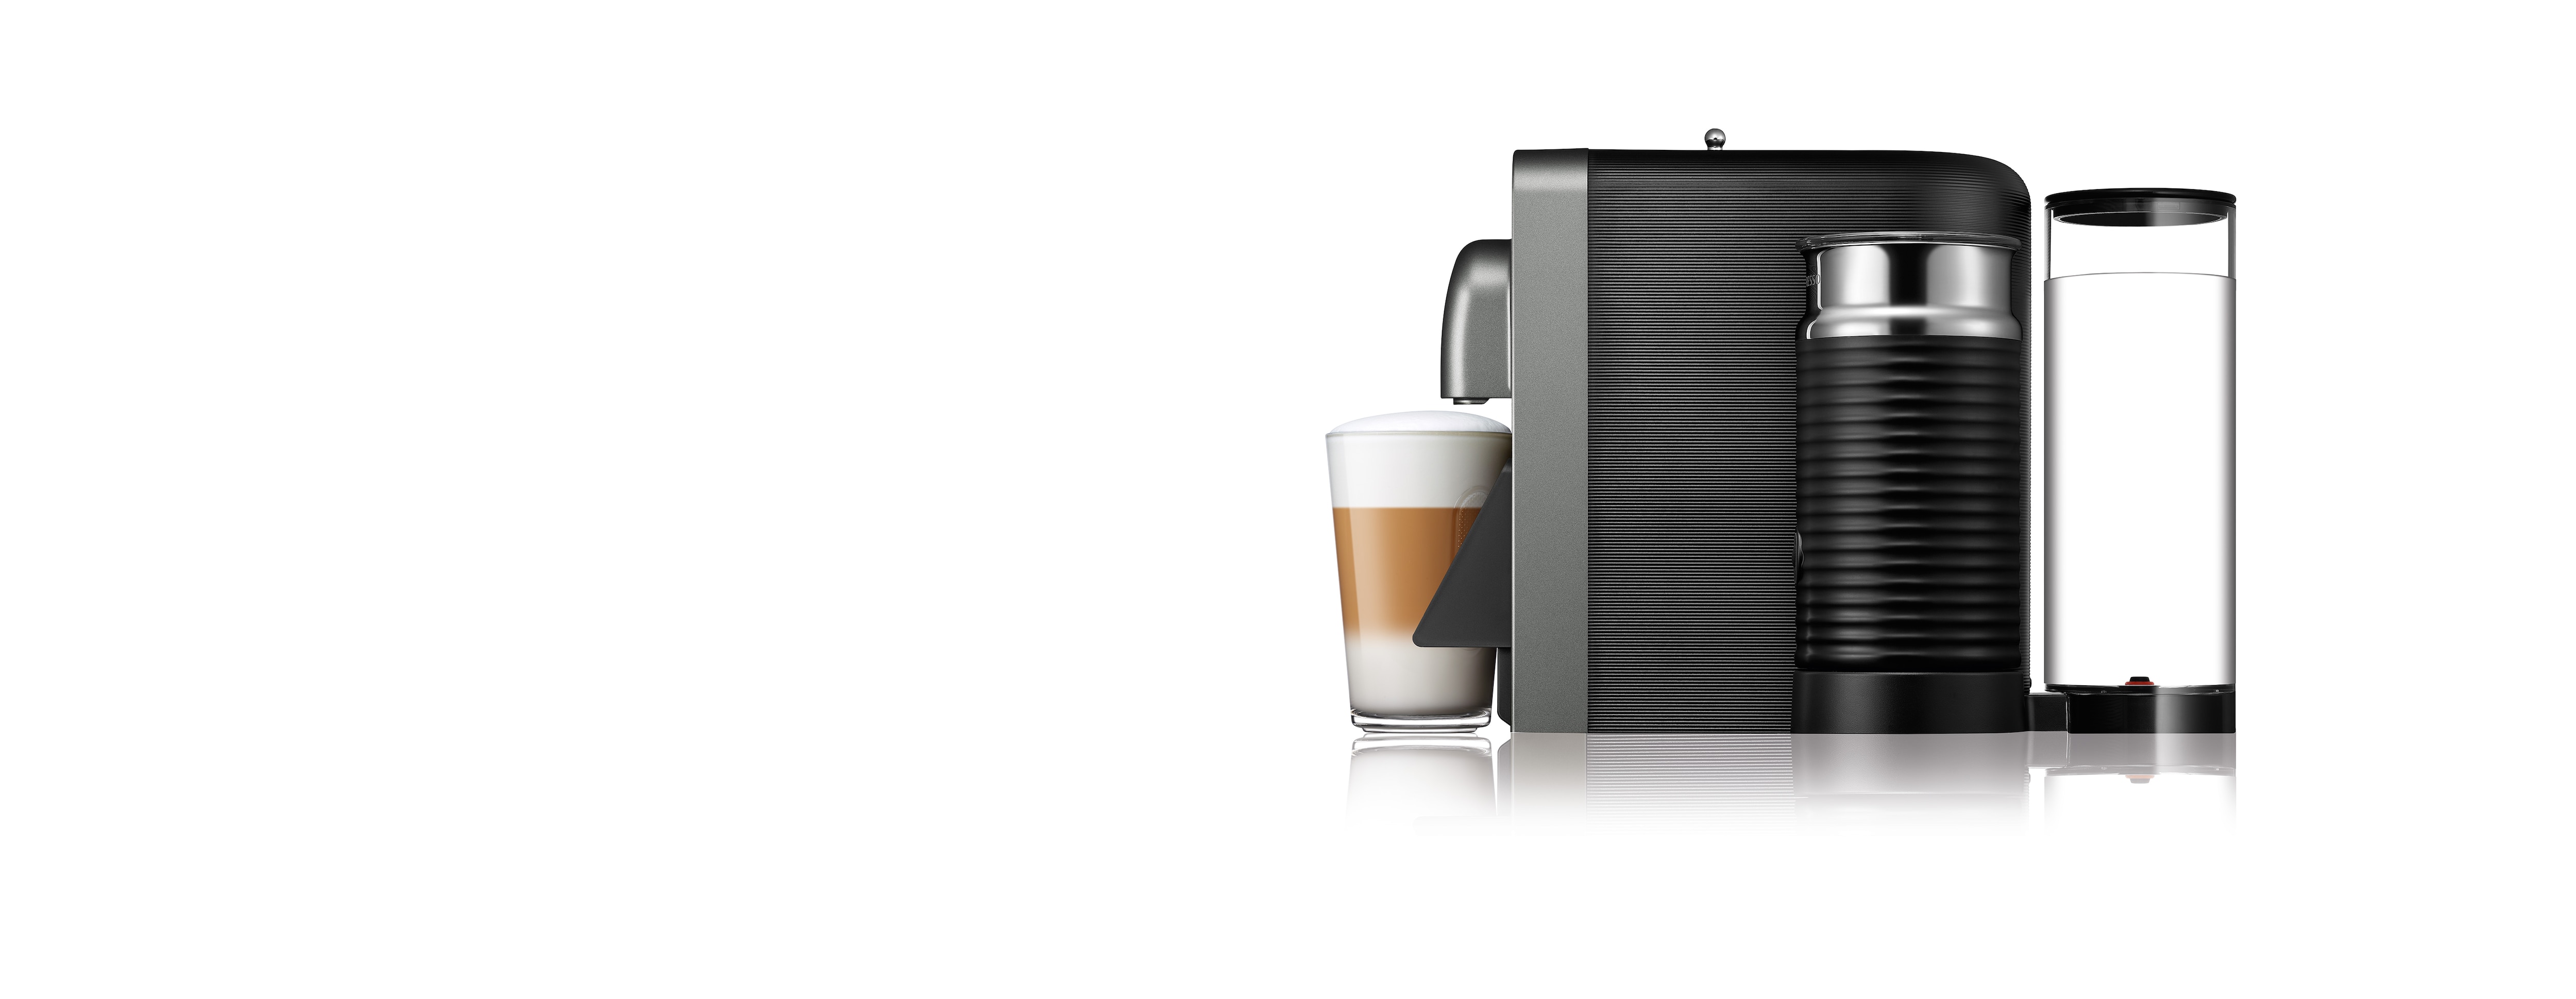 Prodigio Titan | Espresso Machine | Nespresso USA